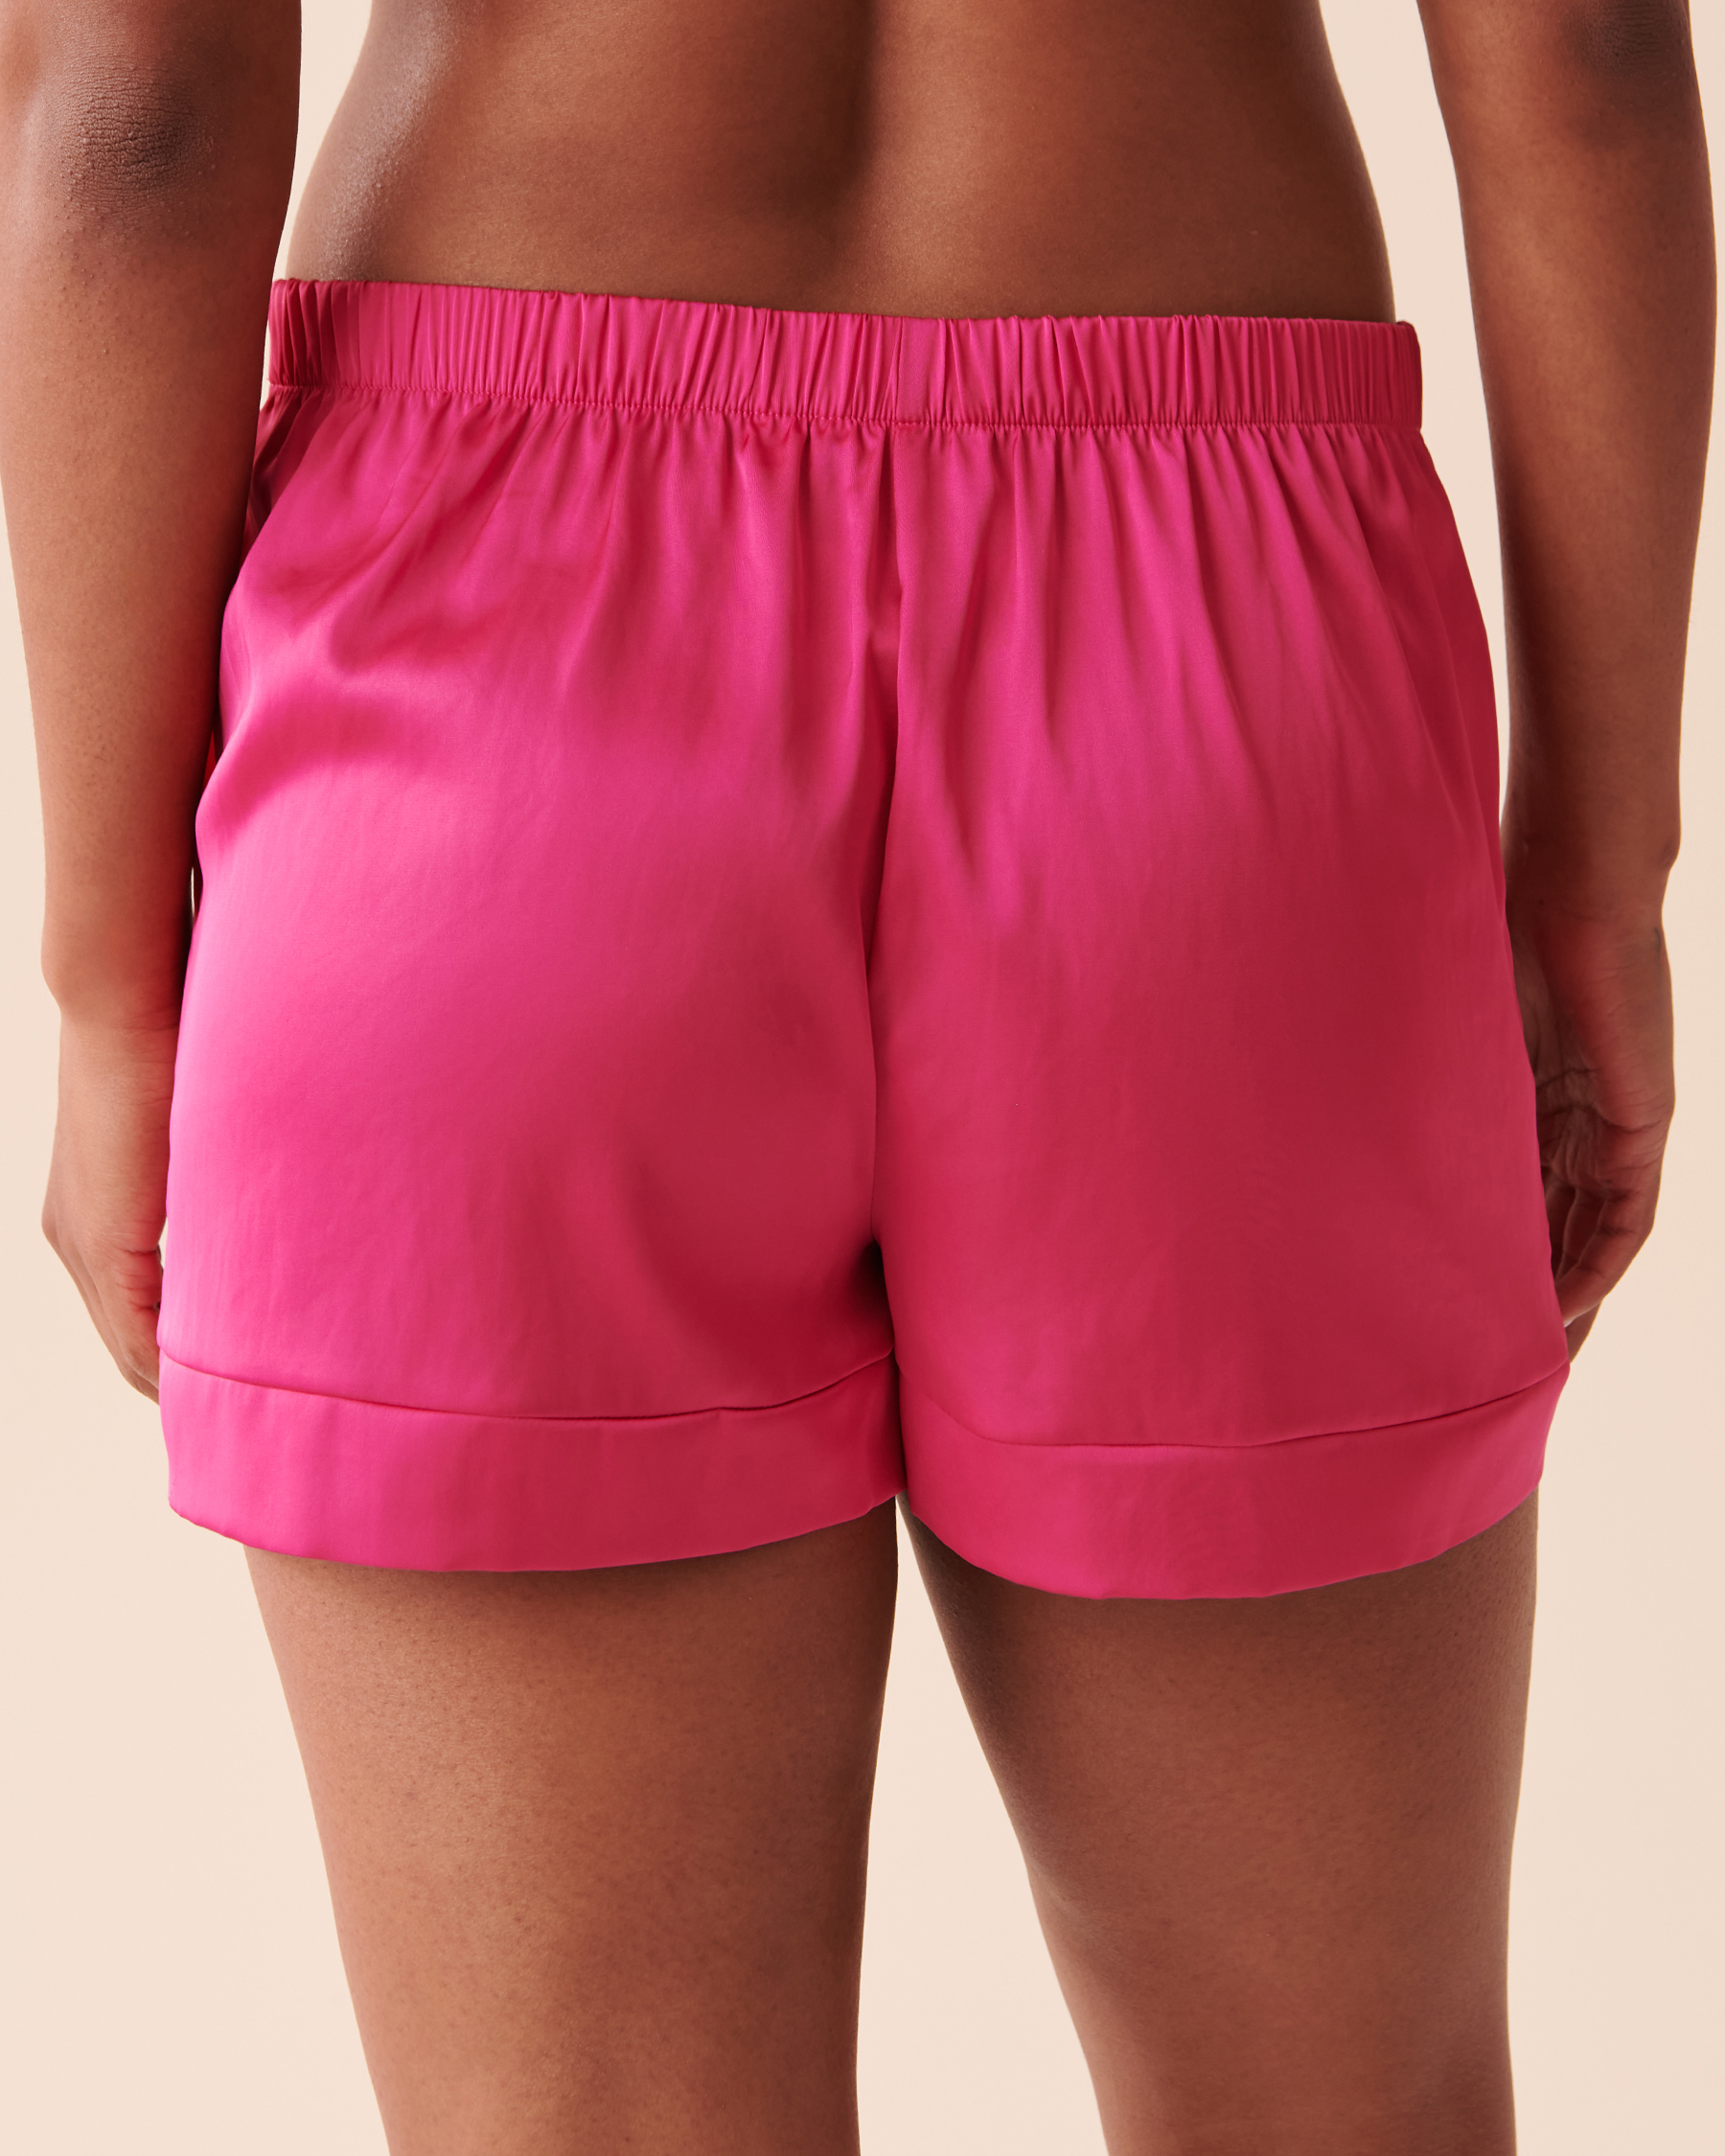 la Vie en Rose Women’s Shocking Pink Satin Shorts